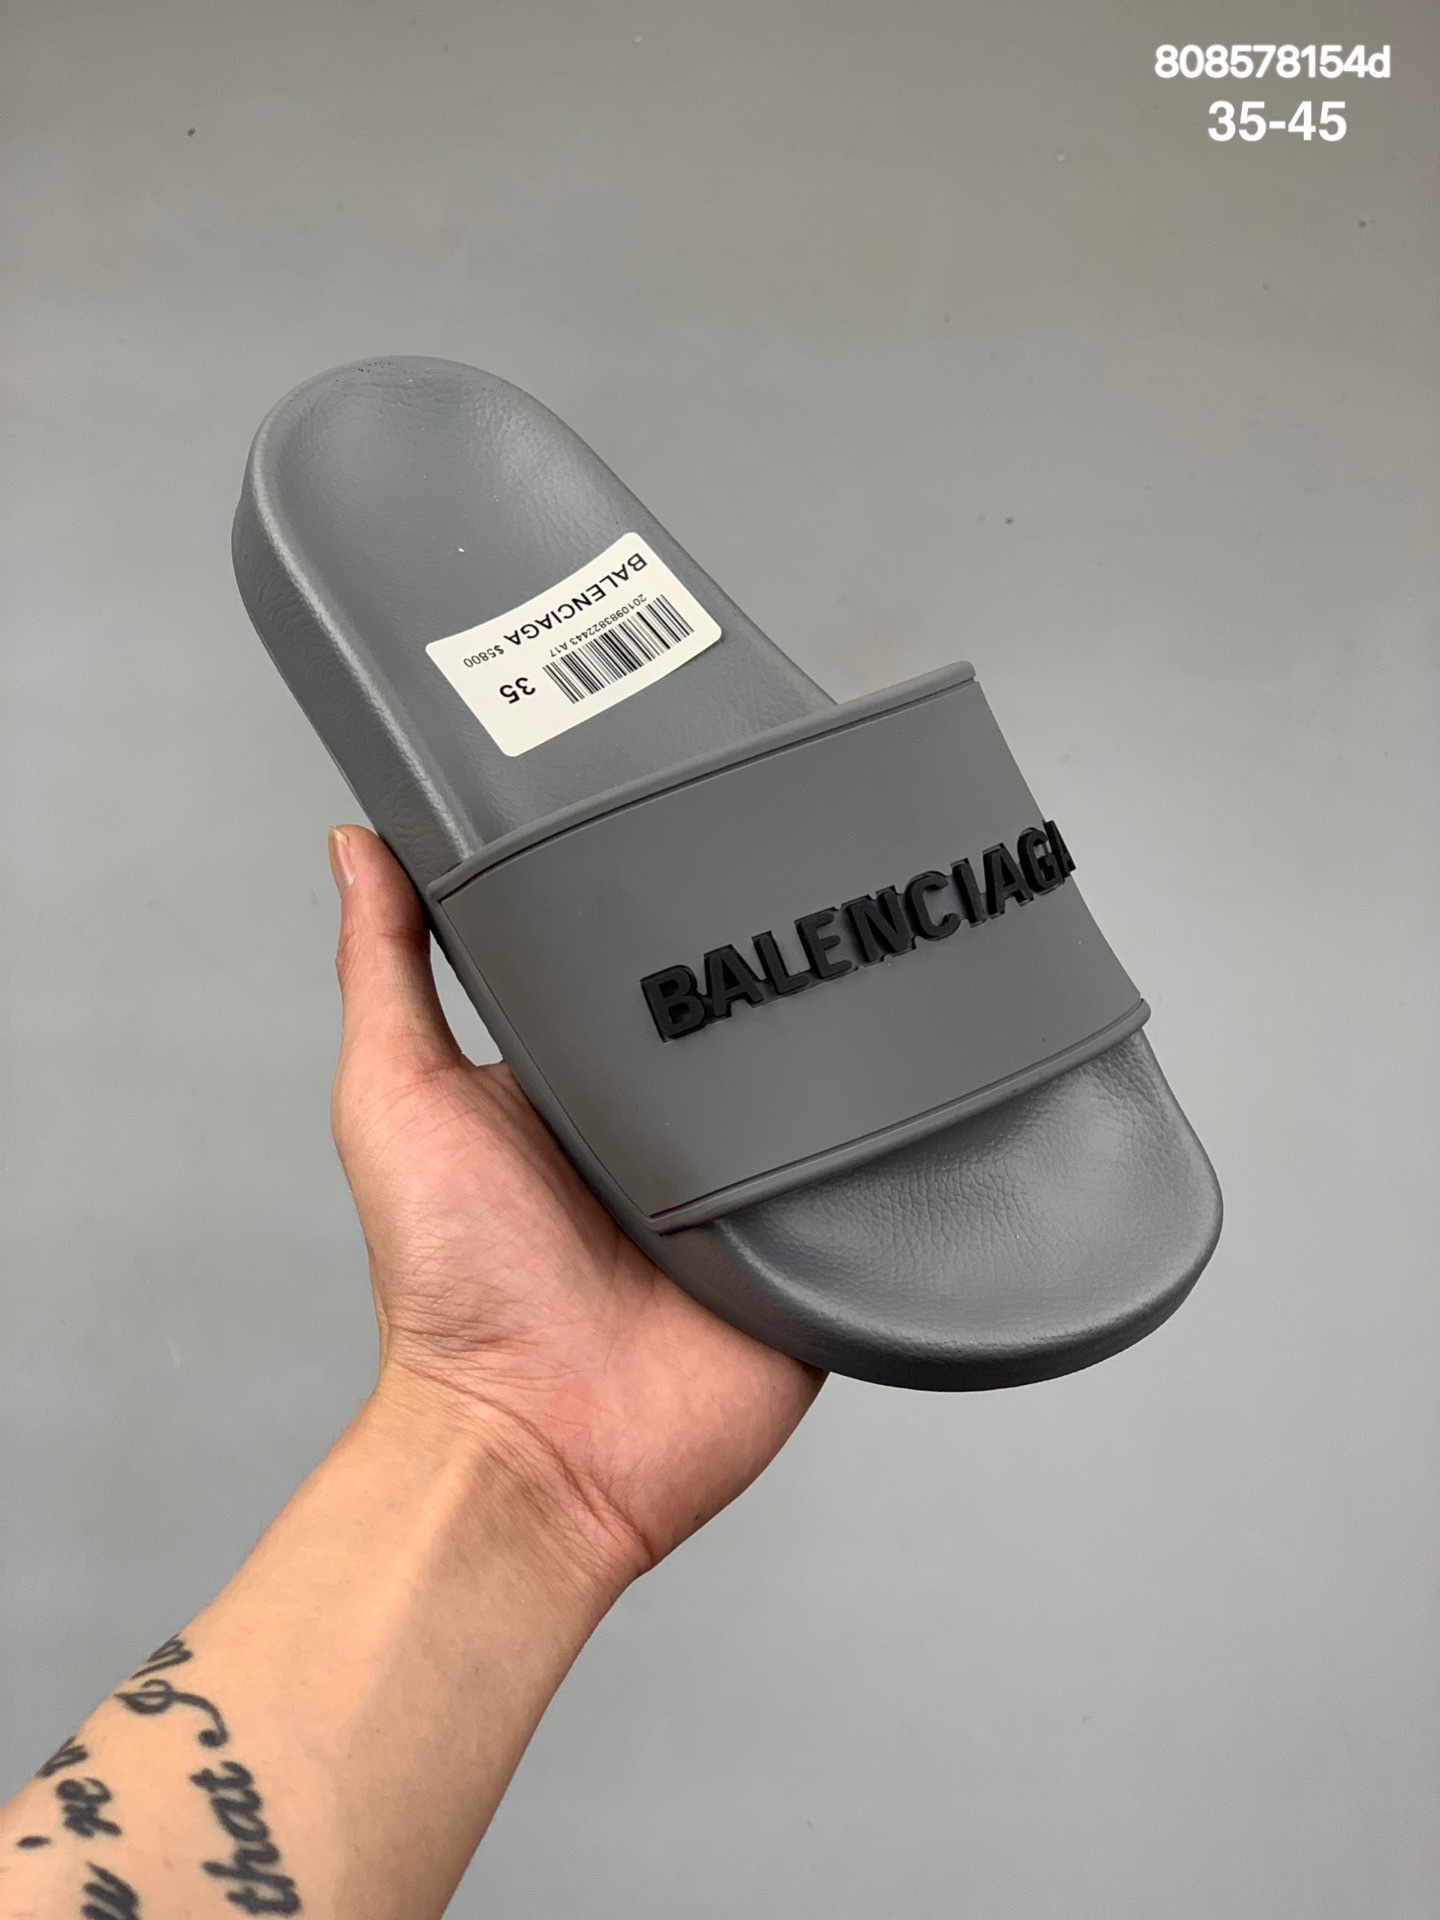 本地
Balenciaga 巴黎世家拖鞋 原鞋购入开发 官方正确版 原装级头层牛皮  1:1裁剪 凹凸感明显 原版一致细节 全码齐全
尺码：35-45
编码:808578154d